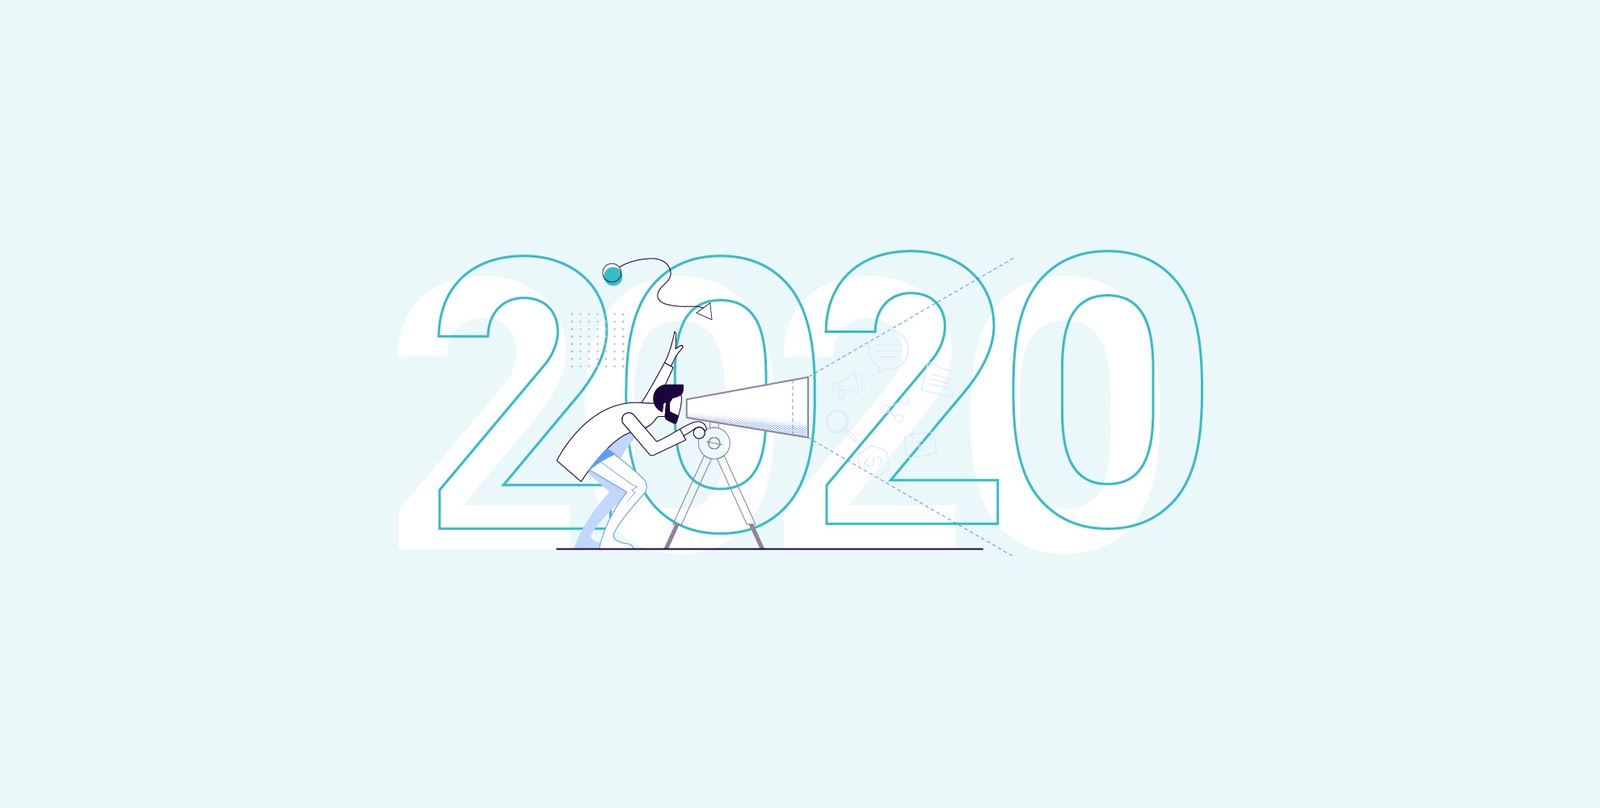 Rainbird’s CEO 2020 predictions